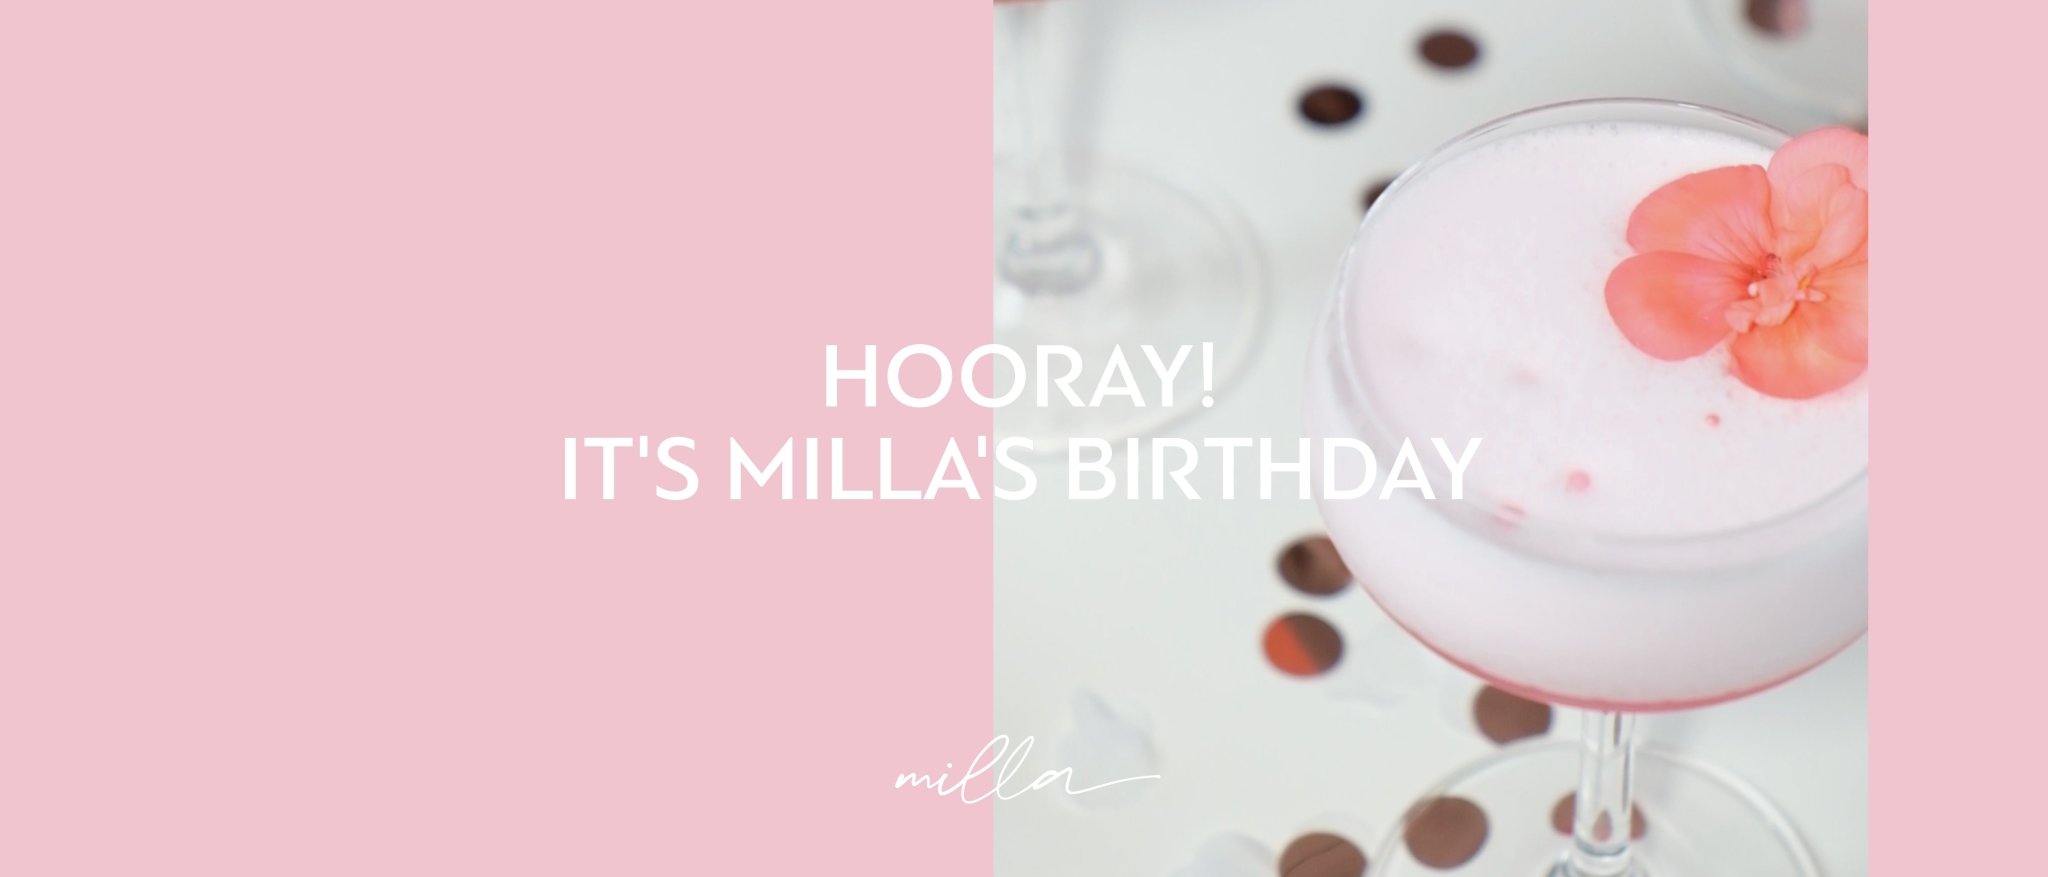 Hooray! It’s Milla’s birthday 🥳 - Milla